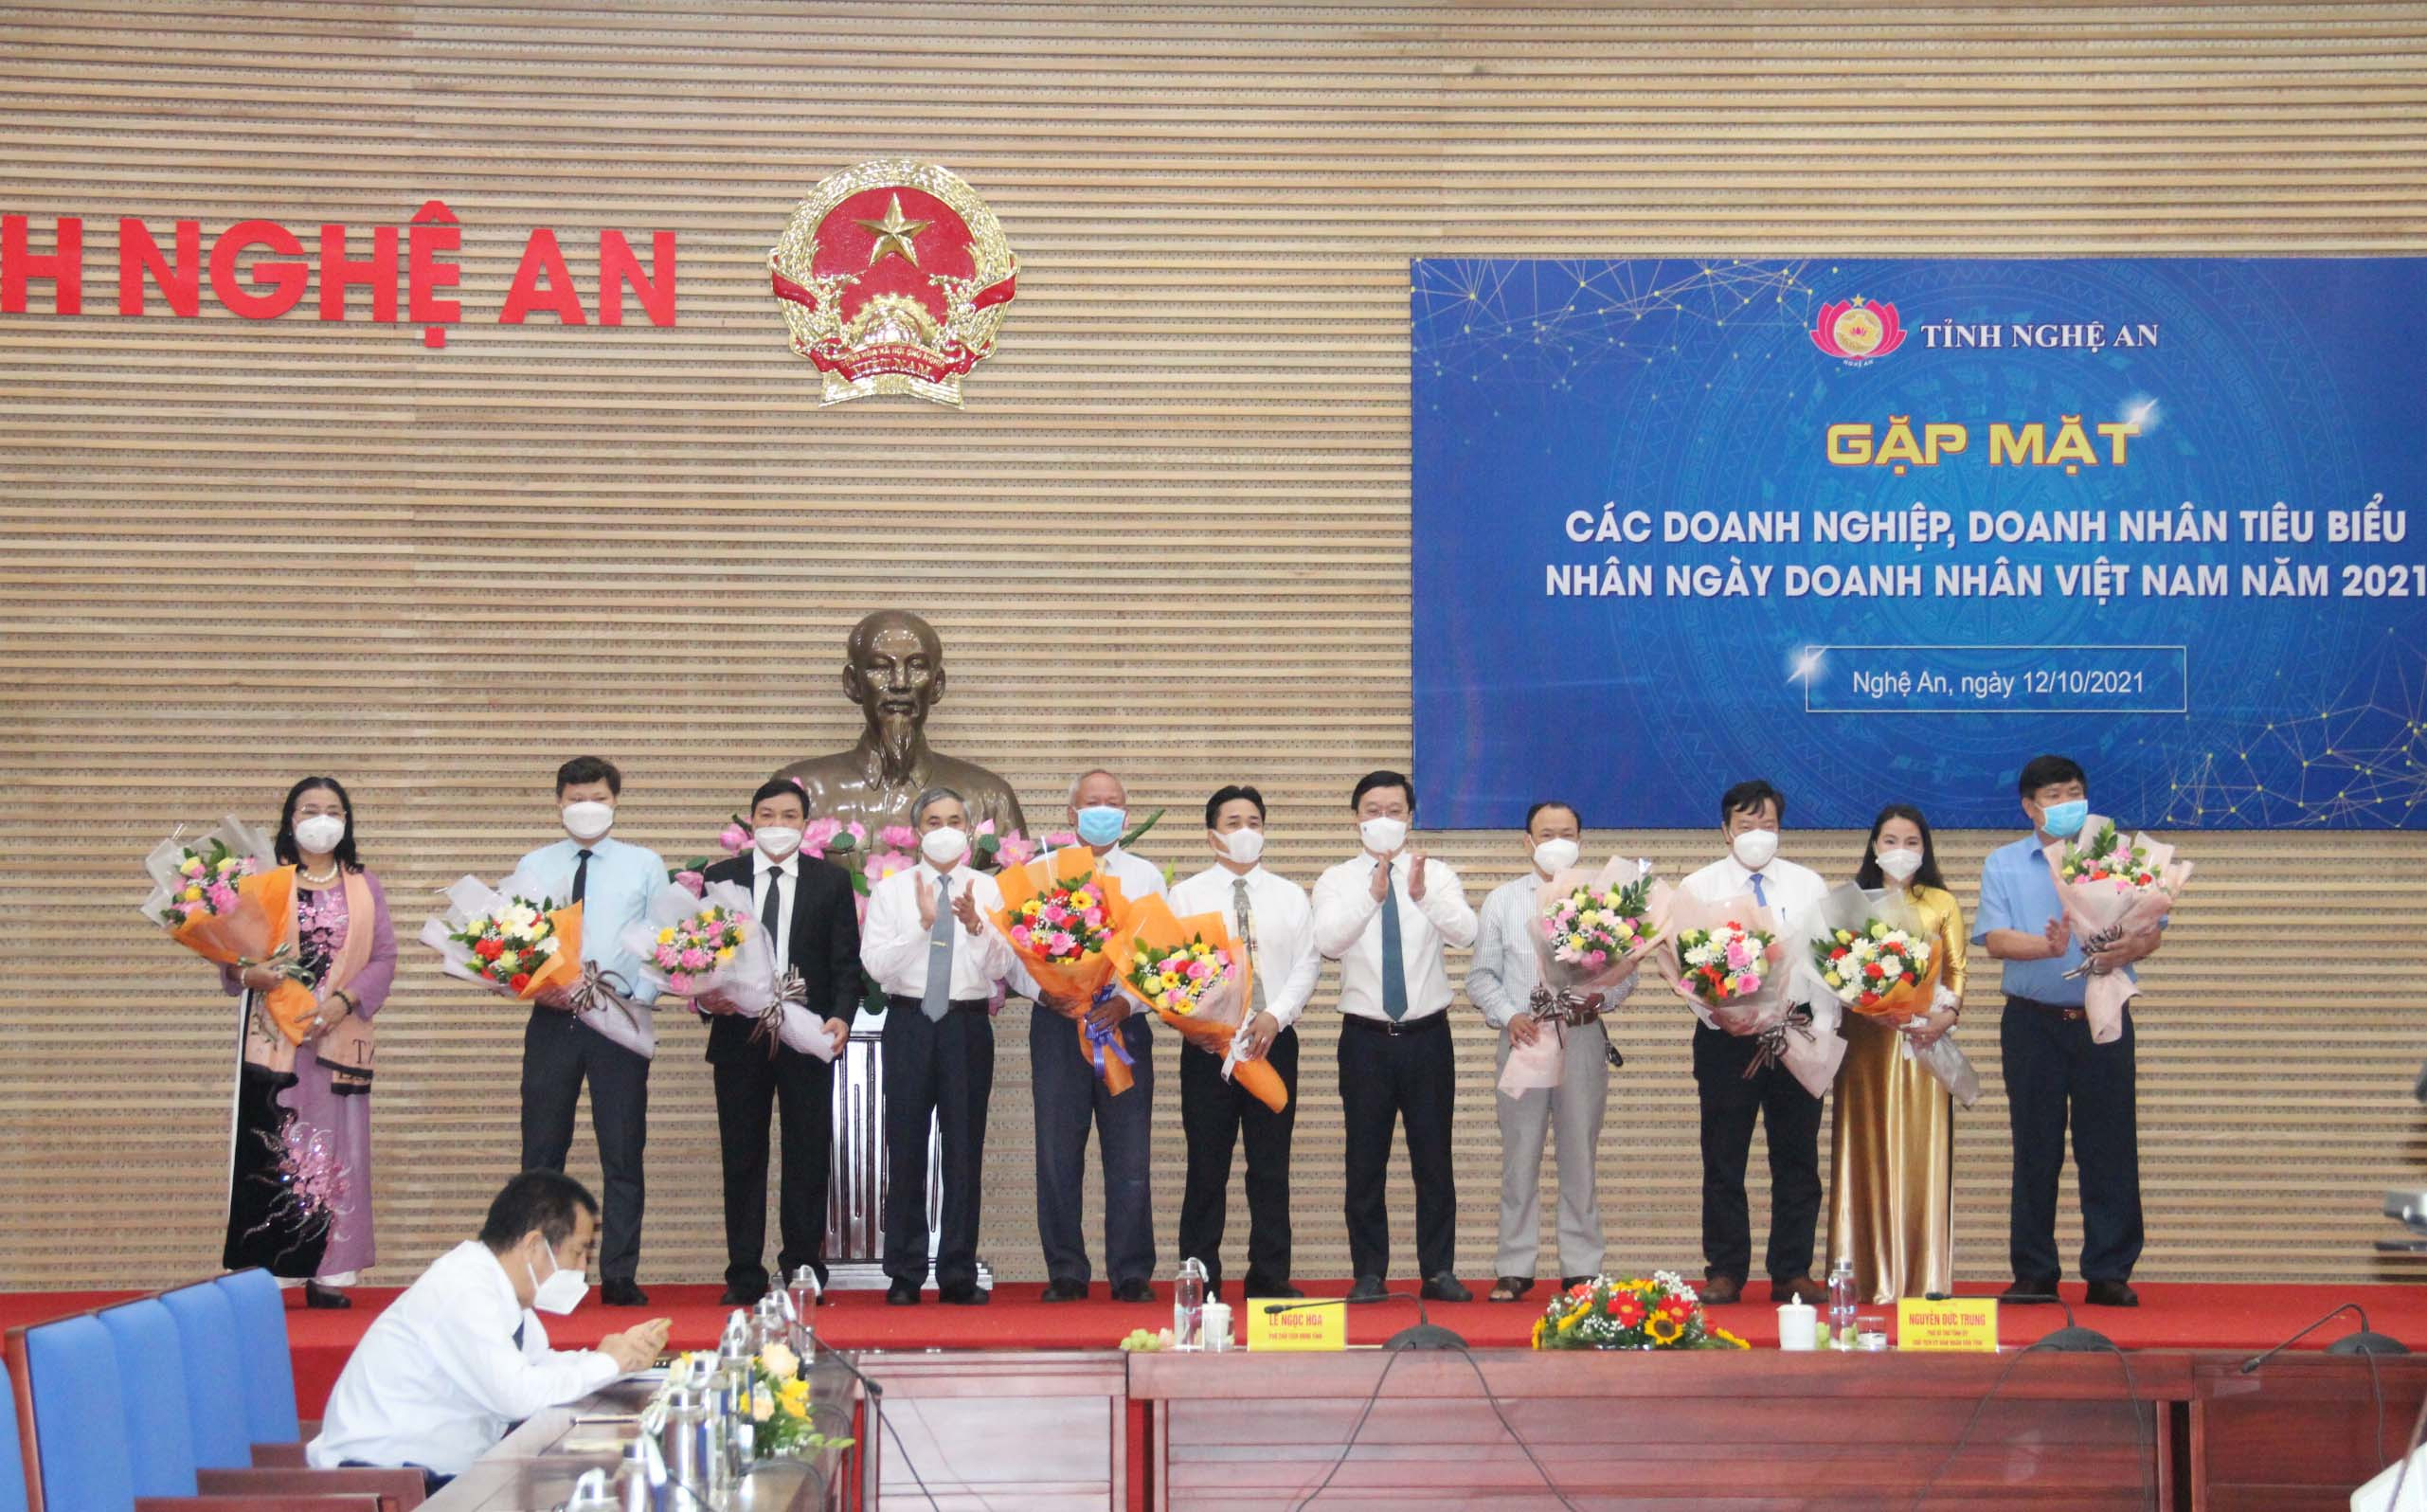 Đồng chí Nguyễn Đức Trung - Chủ tịch UBND tỉnh tặng hoa chúc mừng các Hiệp hội, Hội doanh nghiệp, doanh nghiệp tiêu biểu nhân ngày Doanh nhân Việt Nam. Ảnh: Phạm Bằng